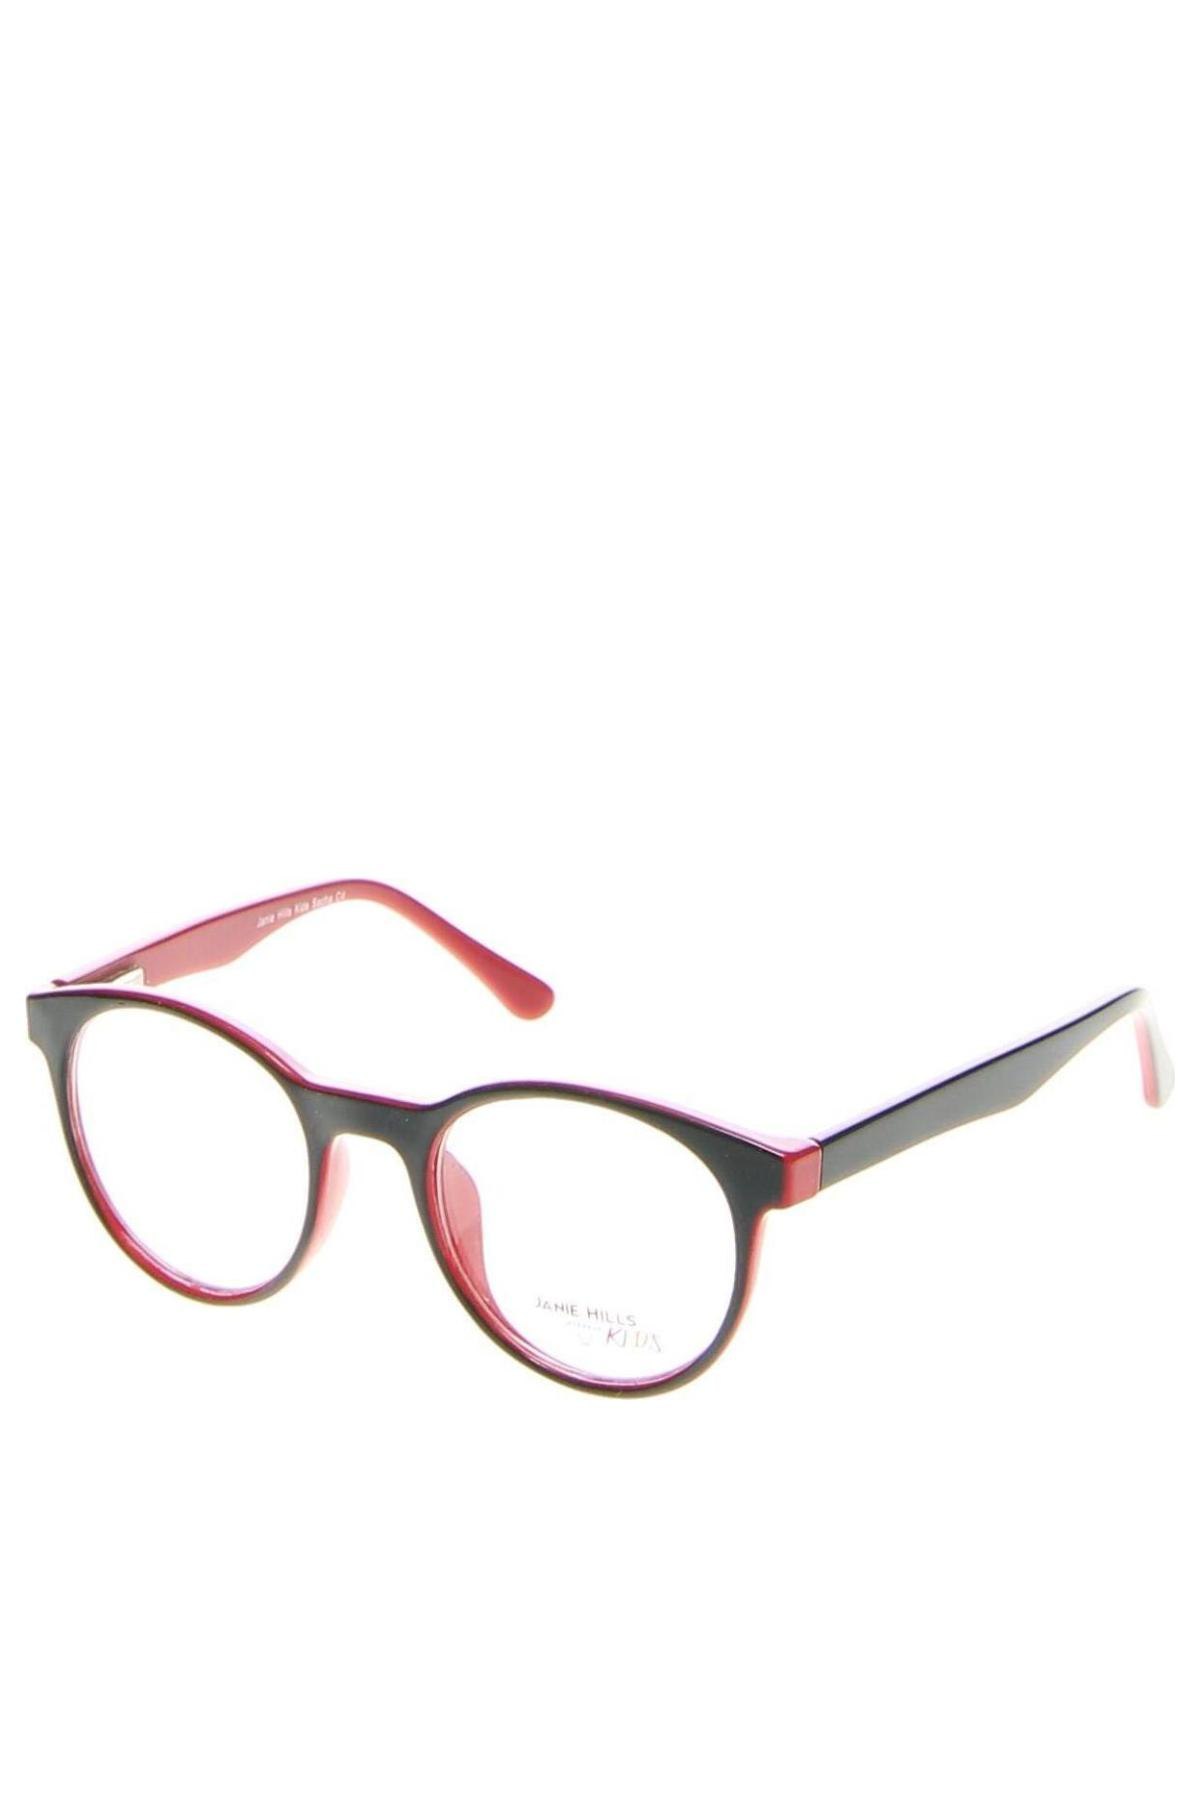 Rámy na dětské brýle Janie Hills, Barva Černá, Cena  691,00 Kč